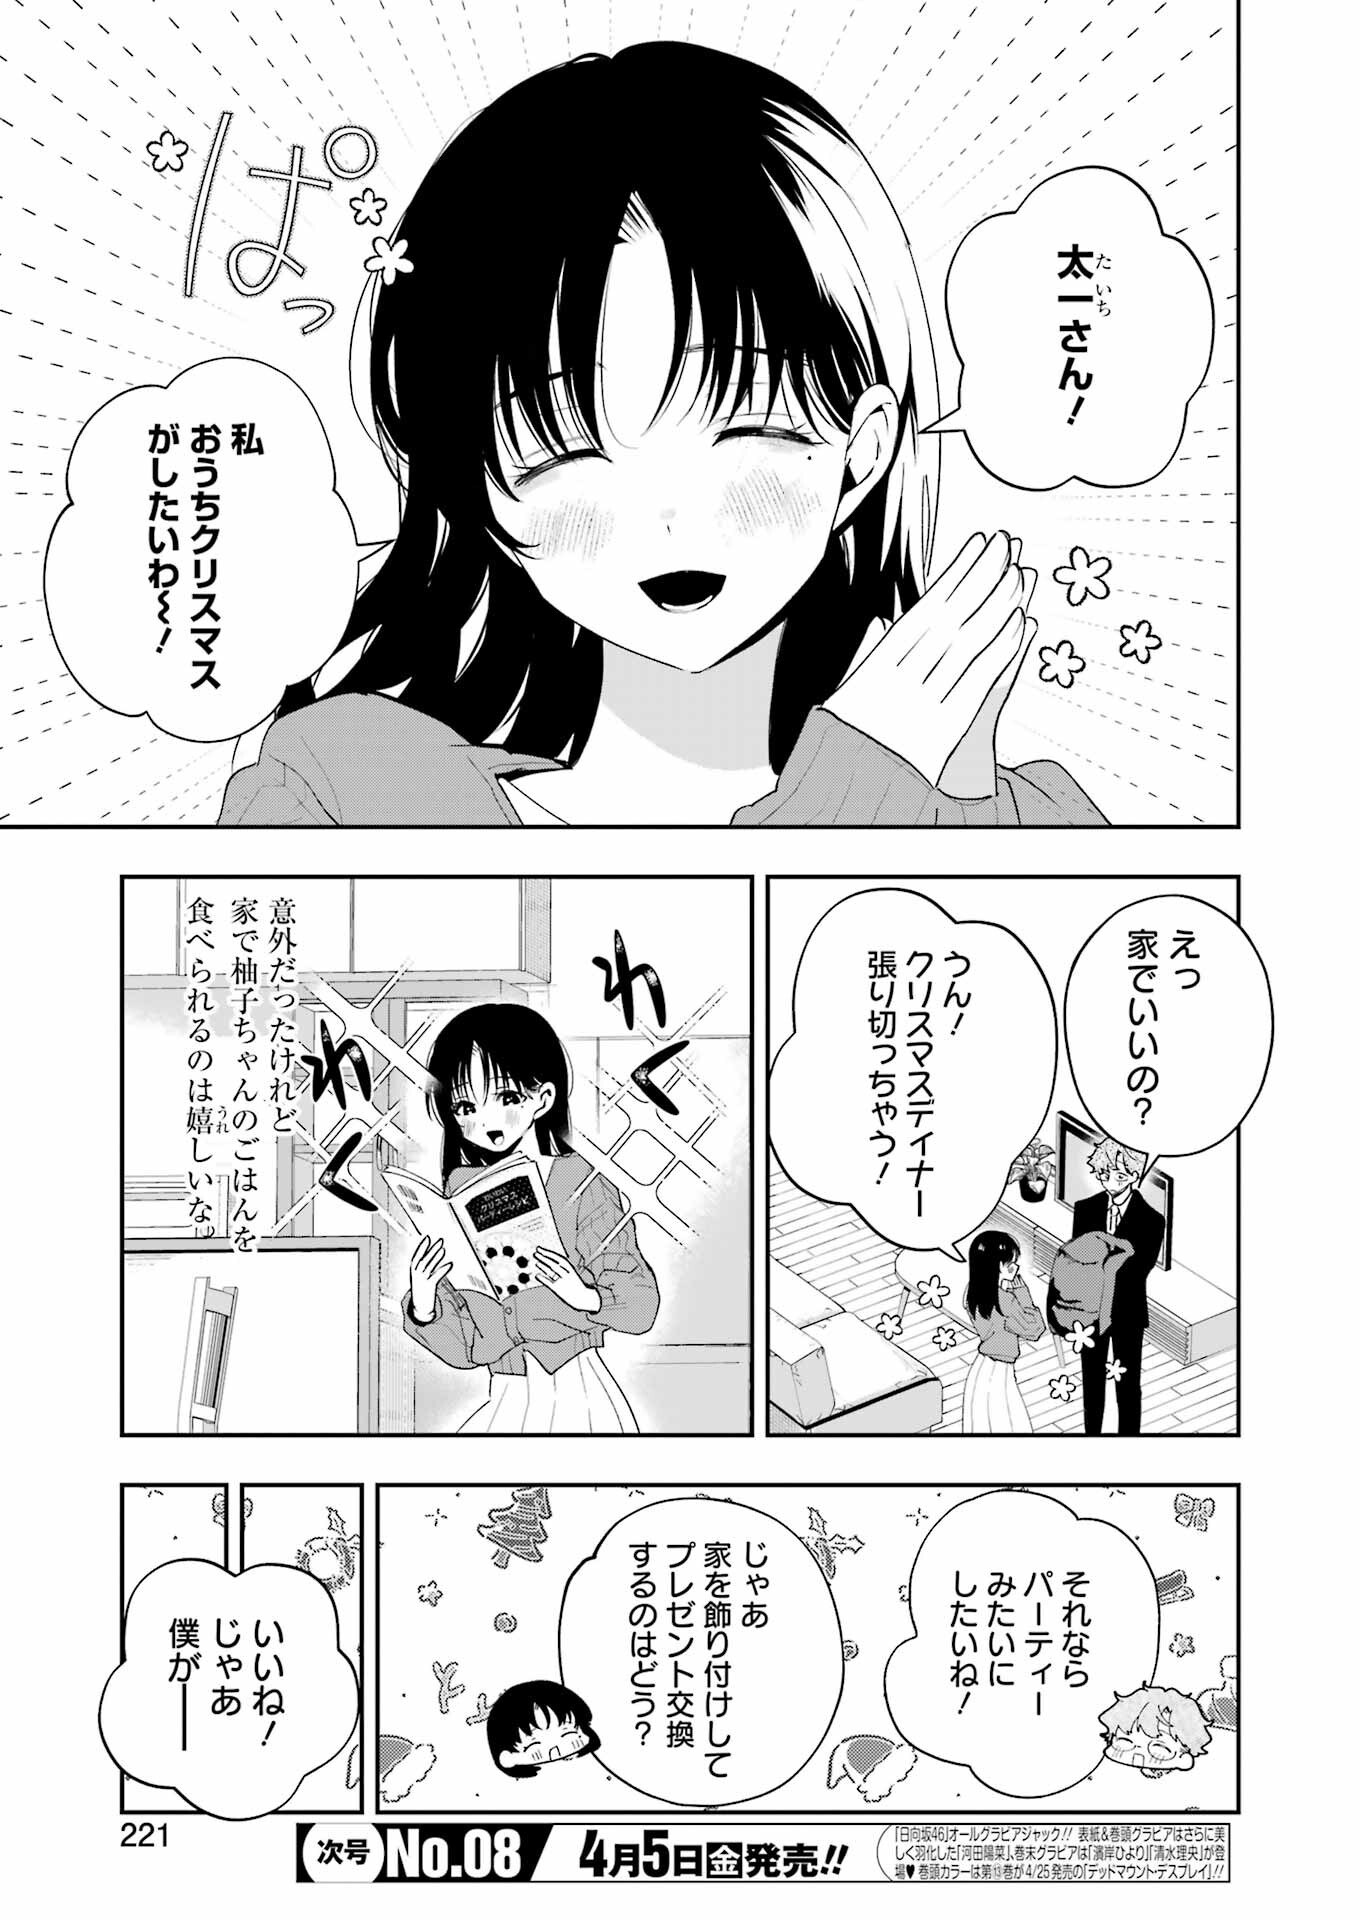 Tsuma wa Boku wo Futorasetai! - Chapter 18 - Page 3